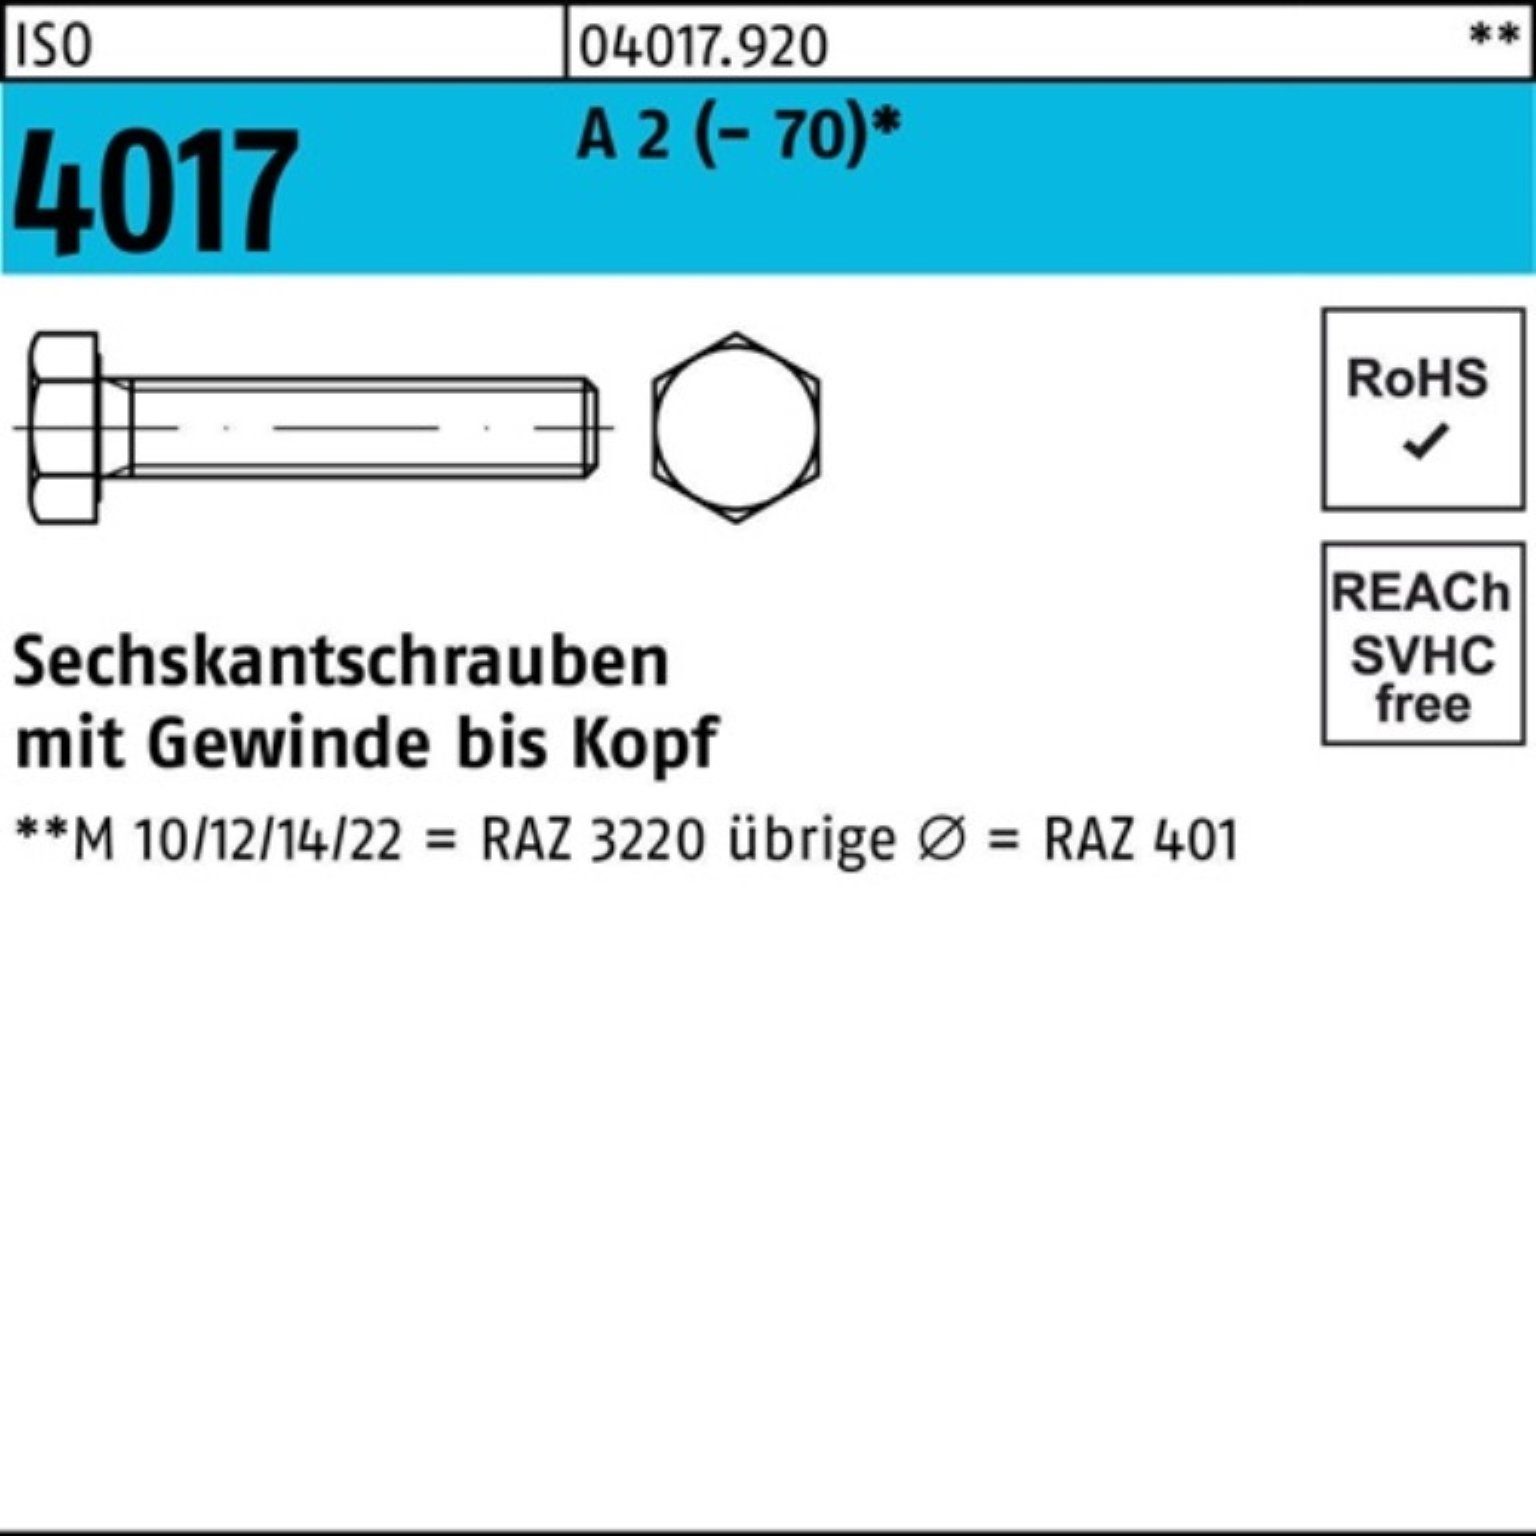 Bufab Sechskantschraube 100er Pack Sechskantschraube ISO 4017 VG M22x 30 A 2 (70) 25 Stück